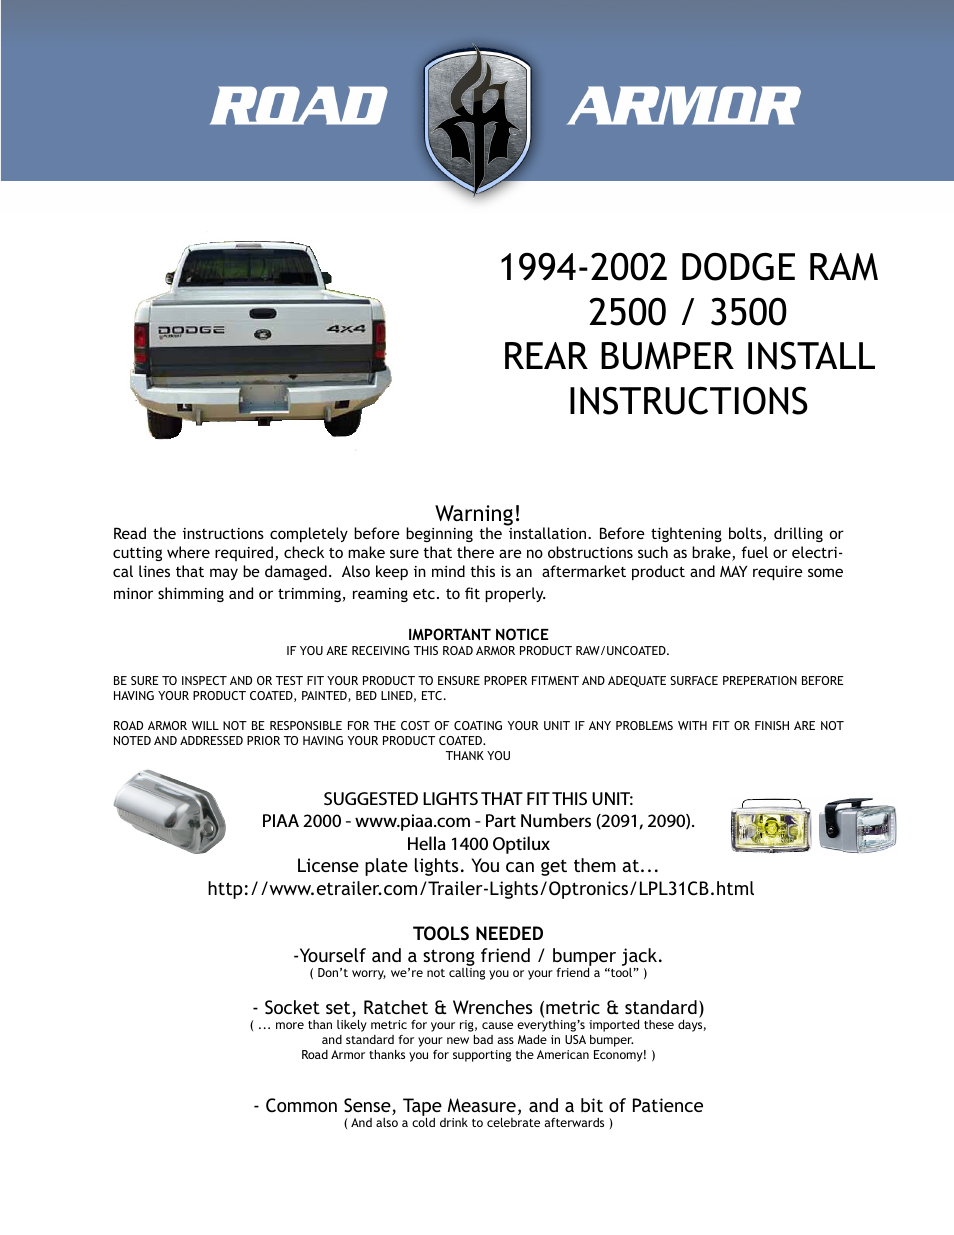 1994-2002 Dodge 2500,3500 Rear Bumper